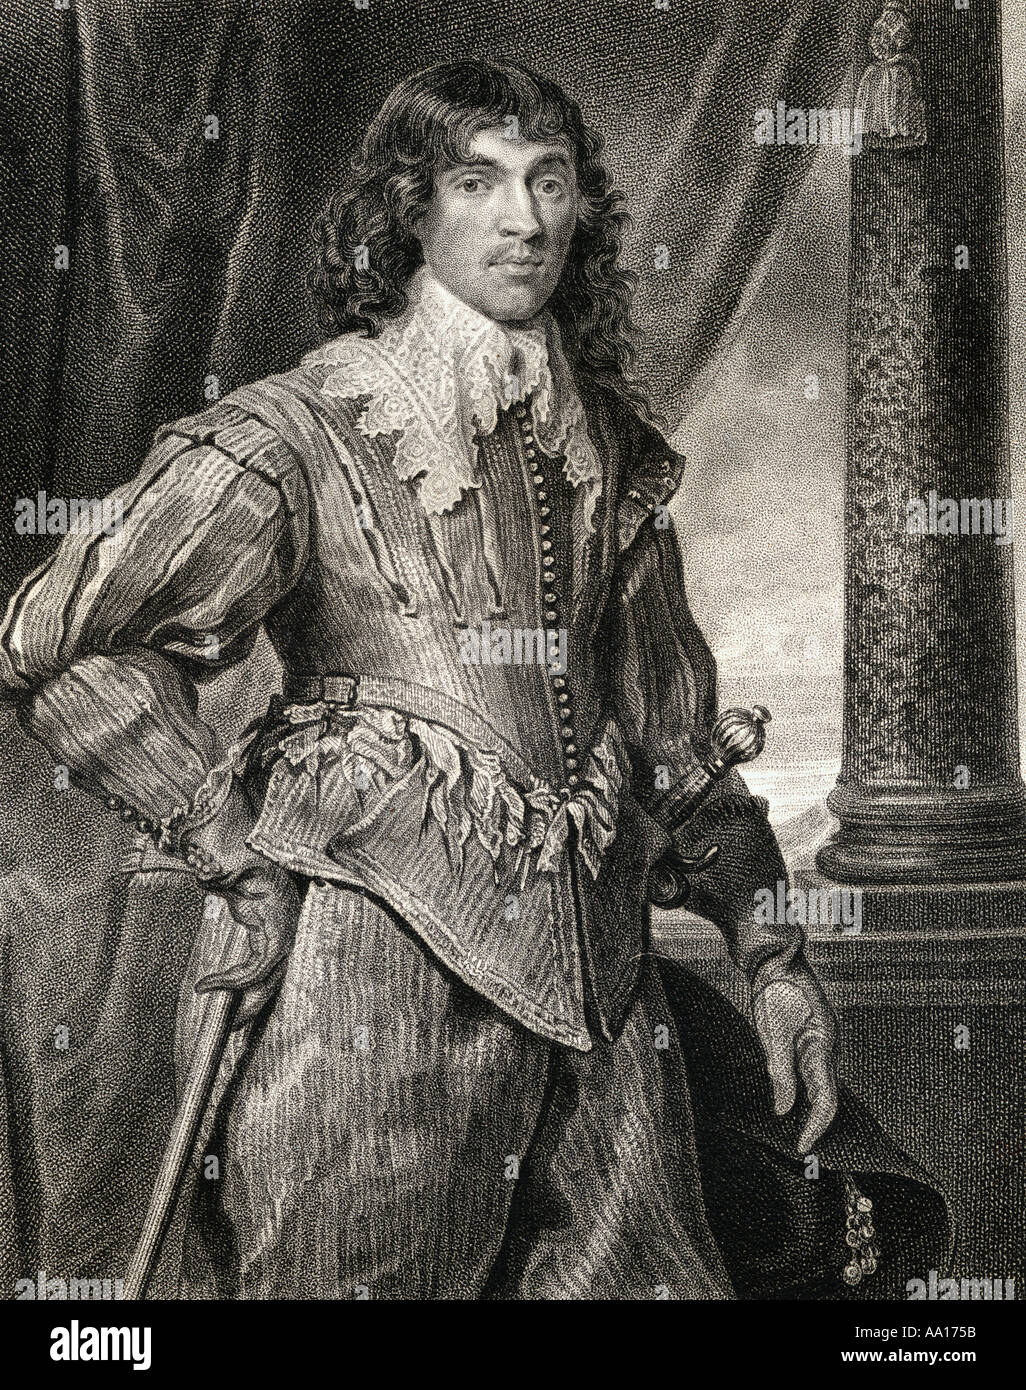 William Hamilton, 2. Herzog von Hamilton, Graf von Cambridge, Earl of Lanark, 1616 - 1651. Schottischen Royalisten während der Englischen Bürgerkriege. Stockfoto